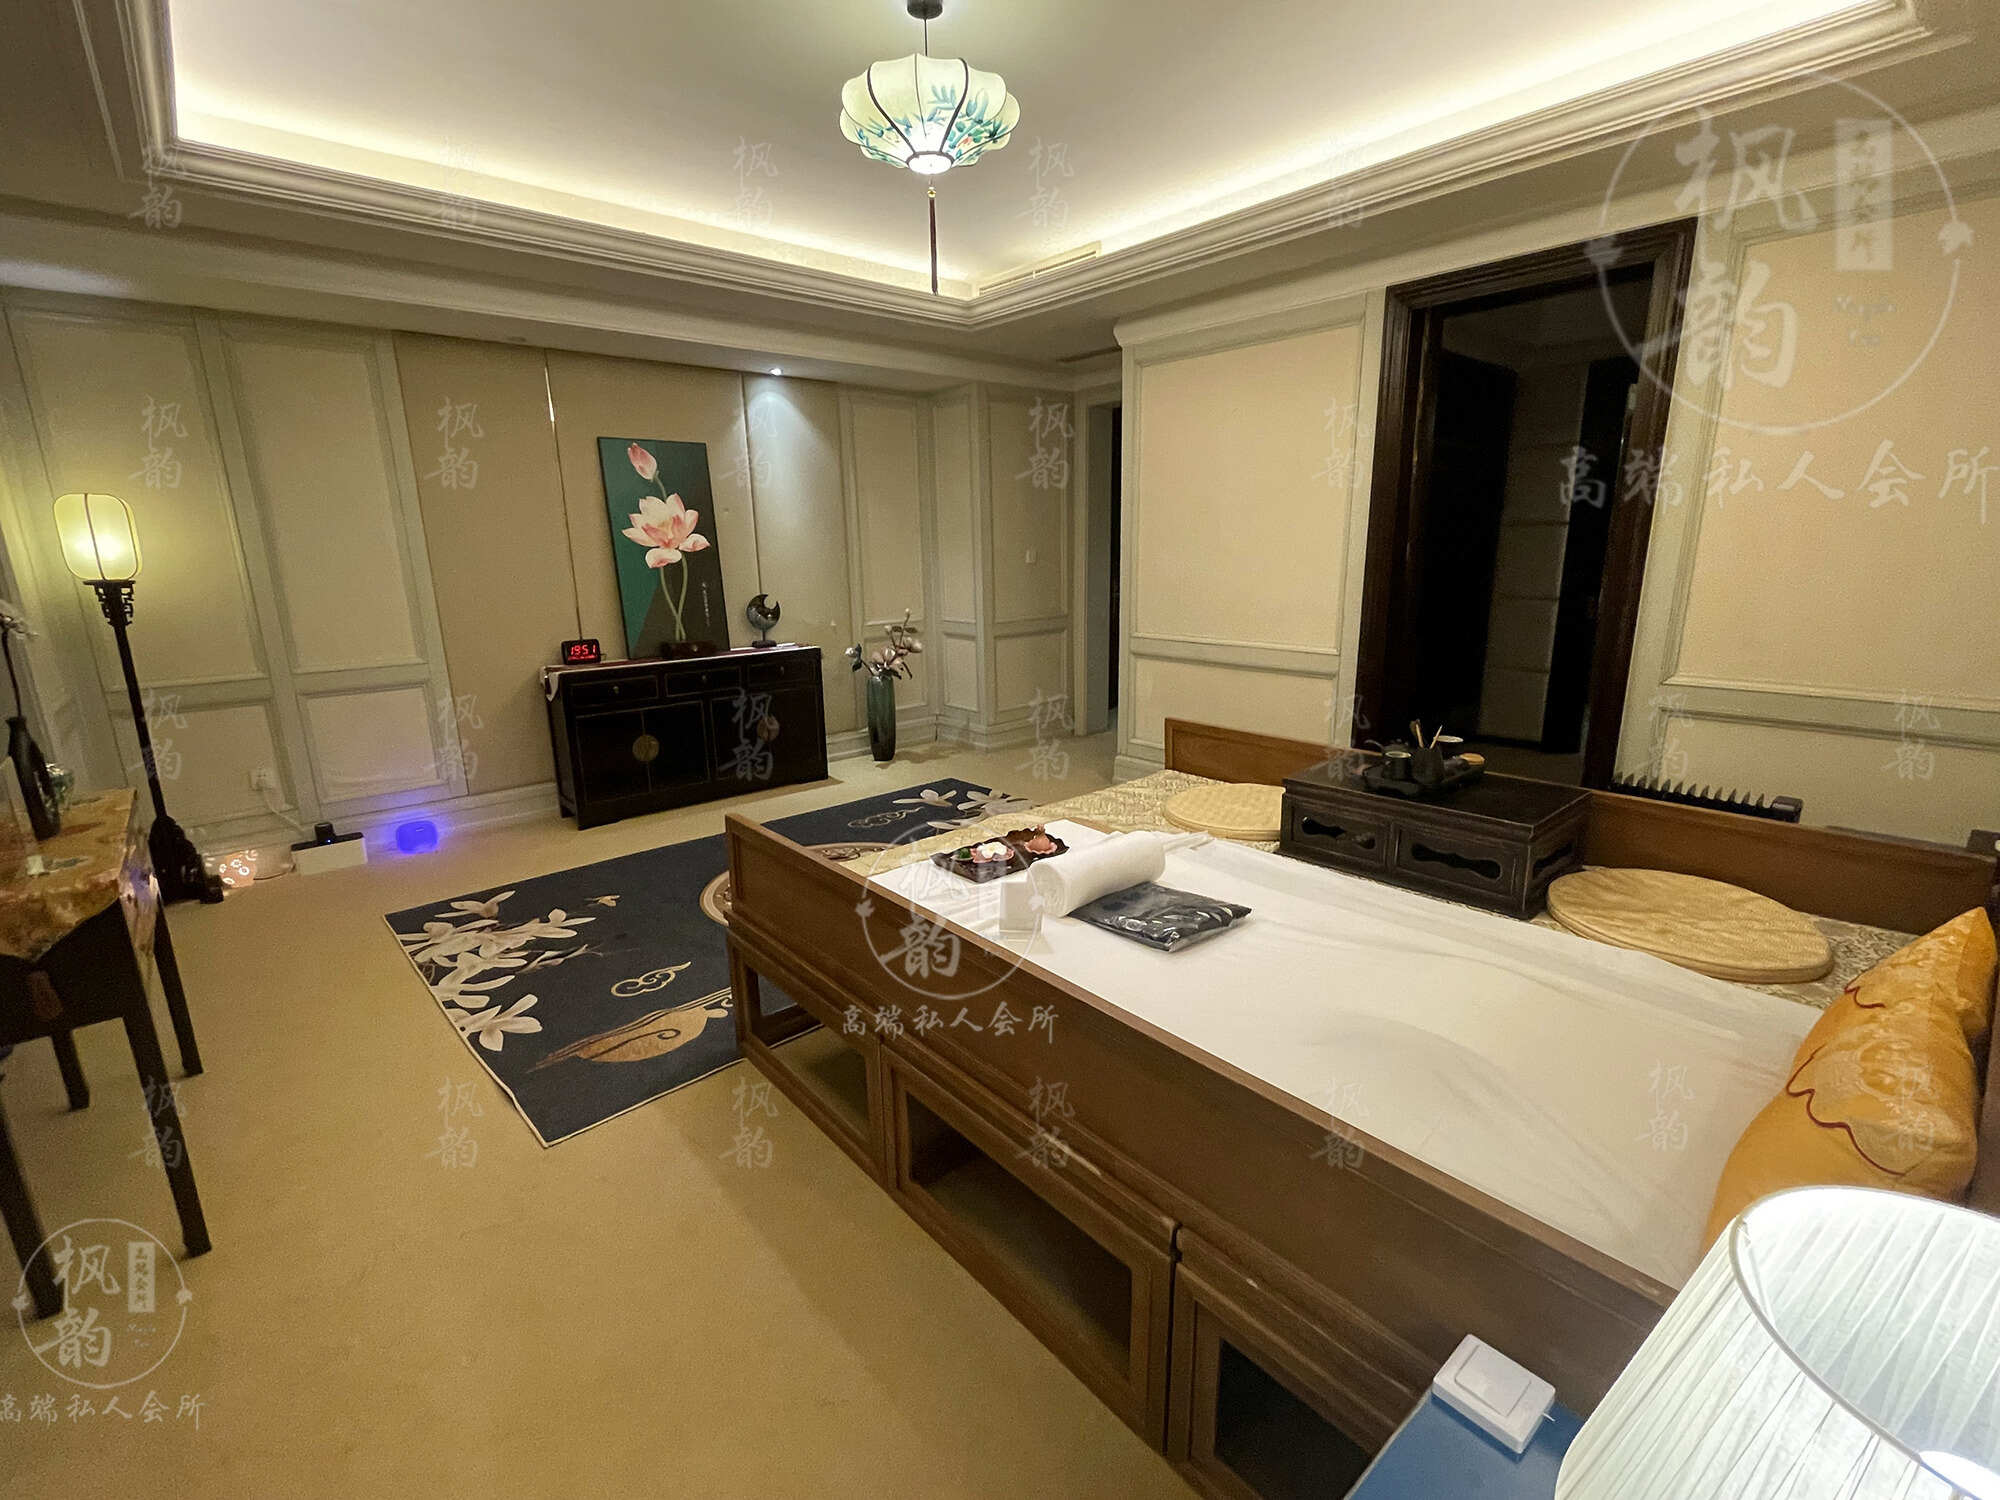 佛山天津渔阳鼓楼人气优选沐足会馆房间也很干净，舒适的spa体验